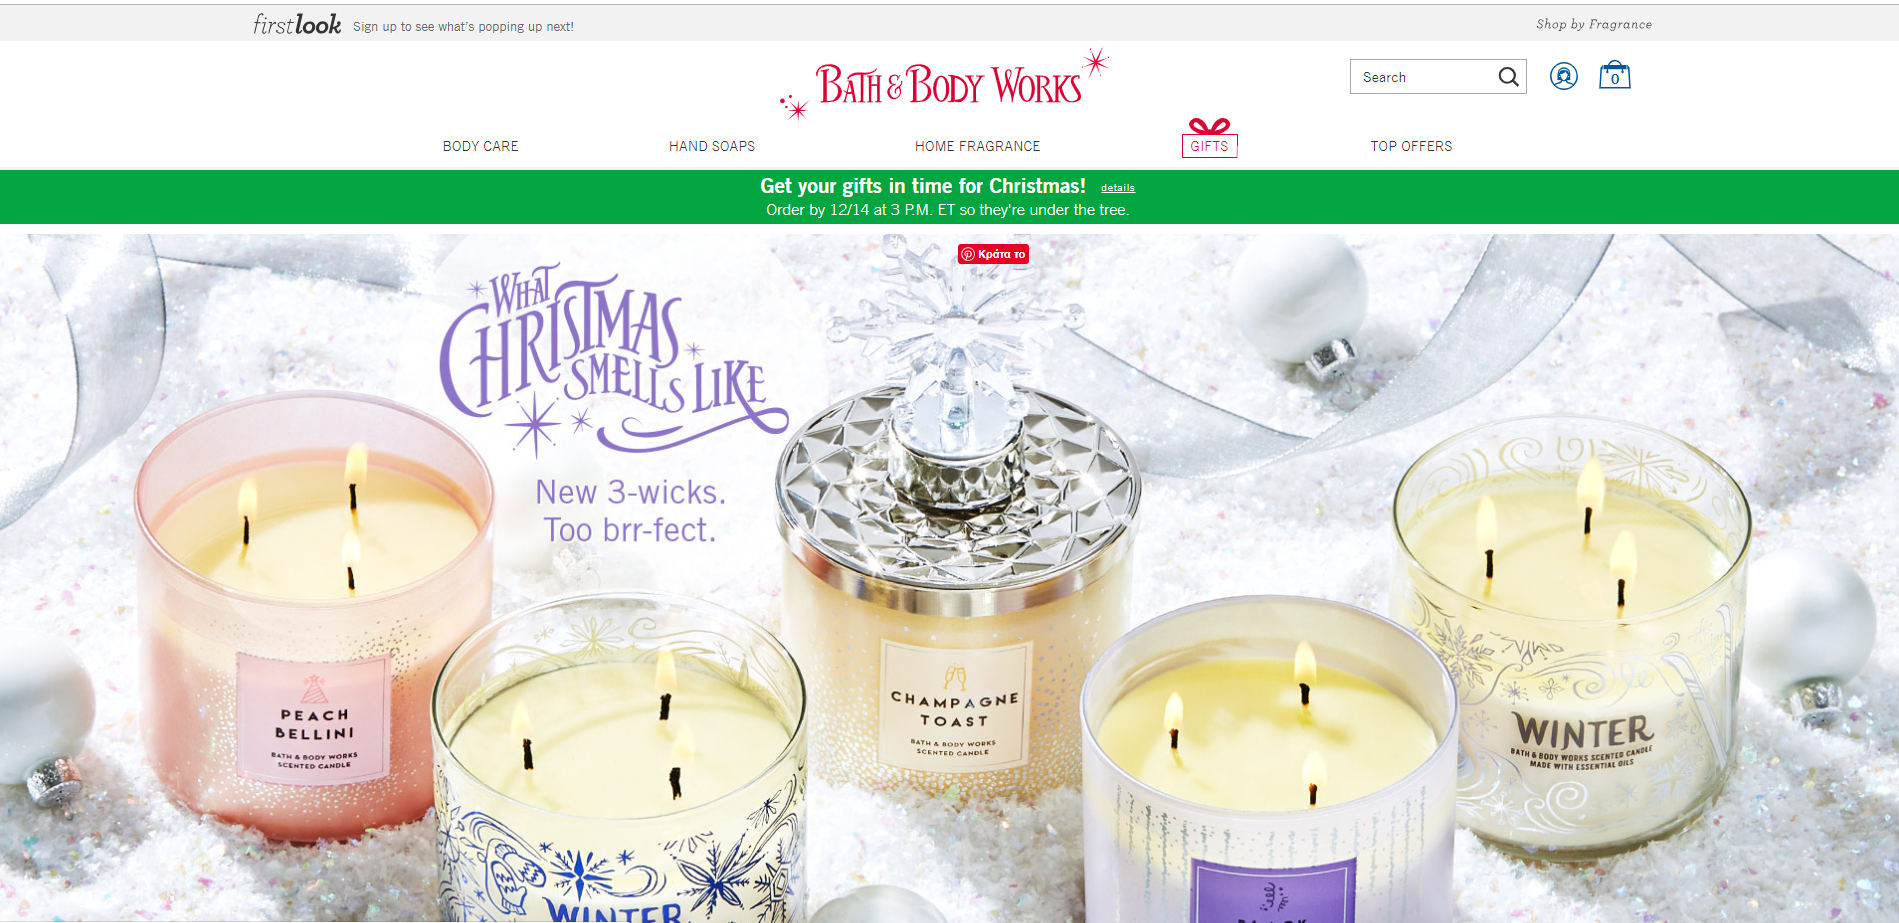 Παράδειγμα διαμόρφωσης αρχικής σελίδας e-shop για τα Χριστούγεννα από το Bath & Body Works